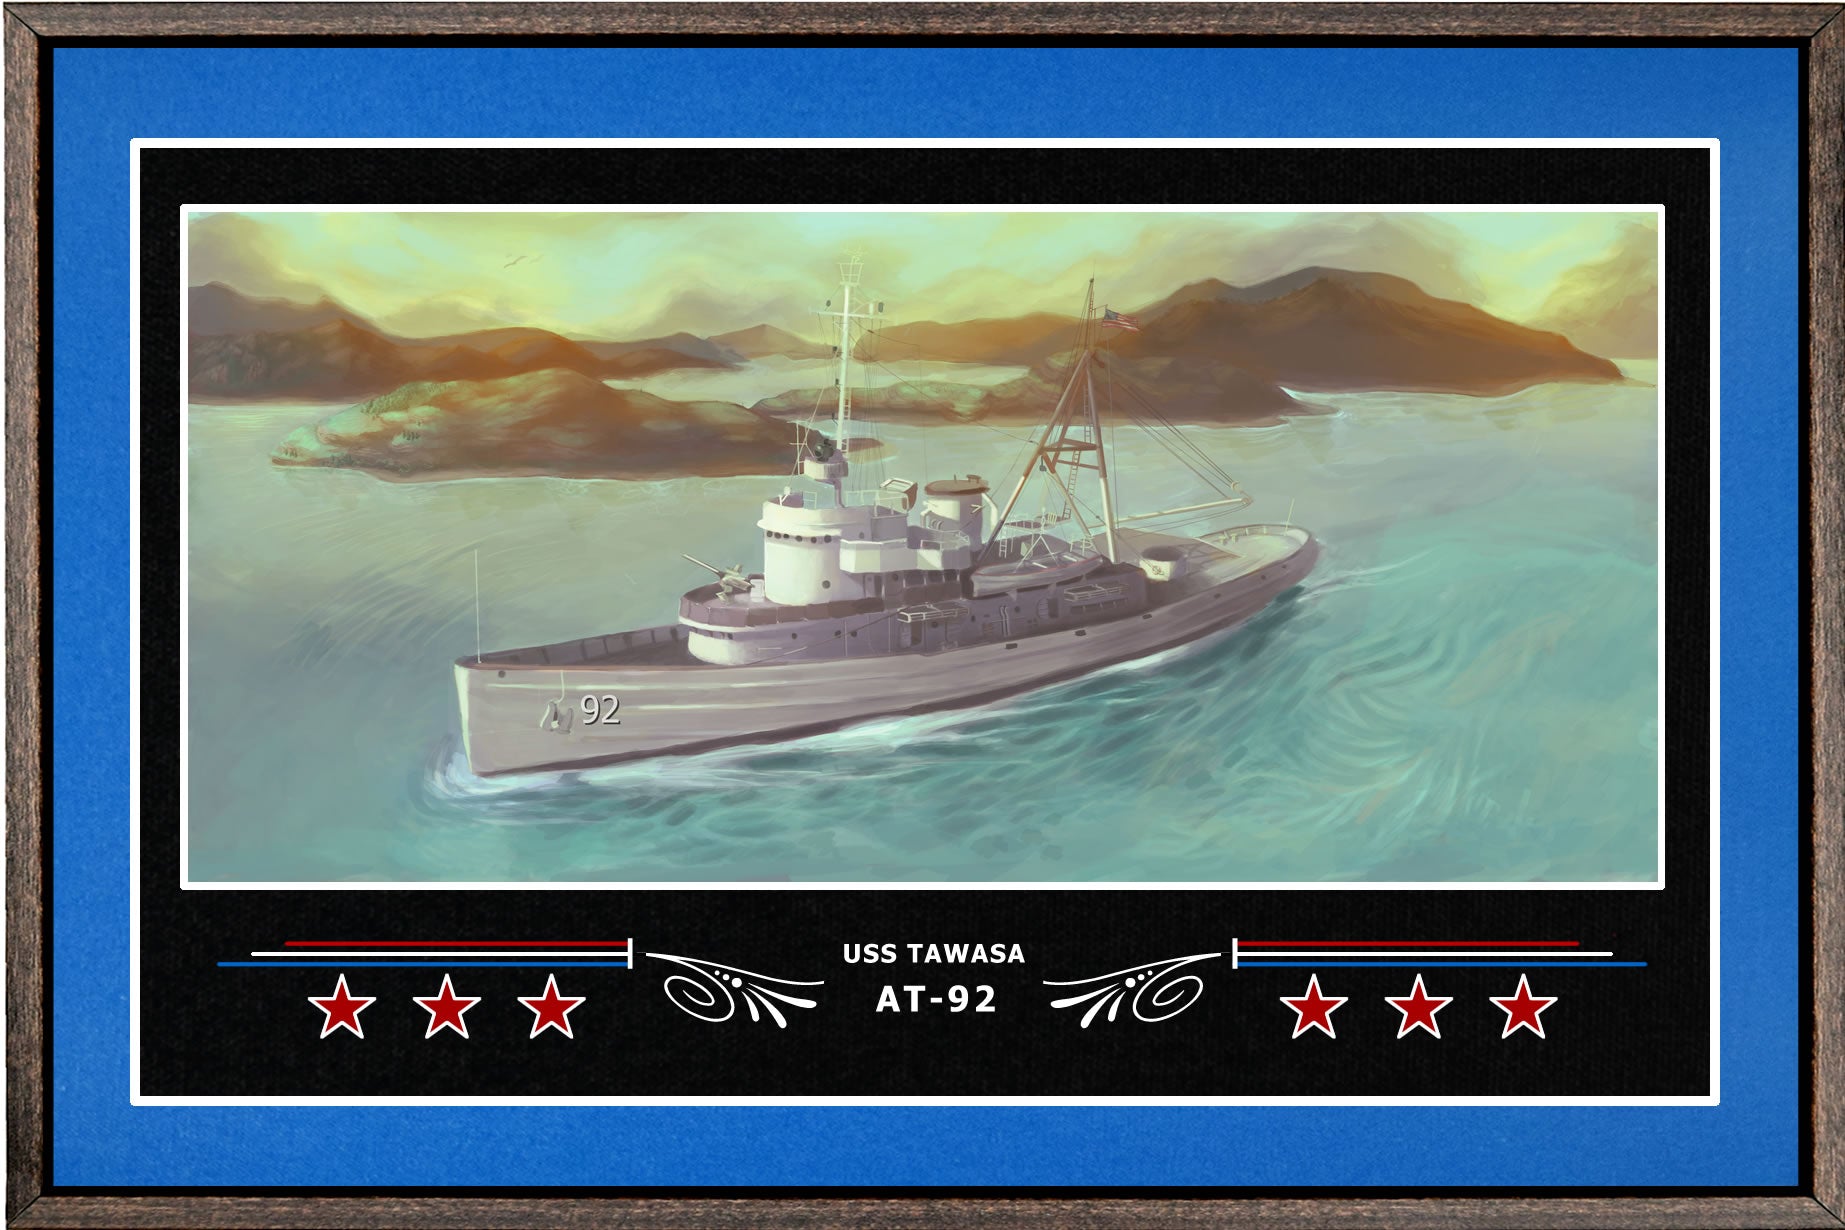 USS TAWASA AT 92 BOX FRAMED CANVAS ART BLUE